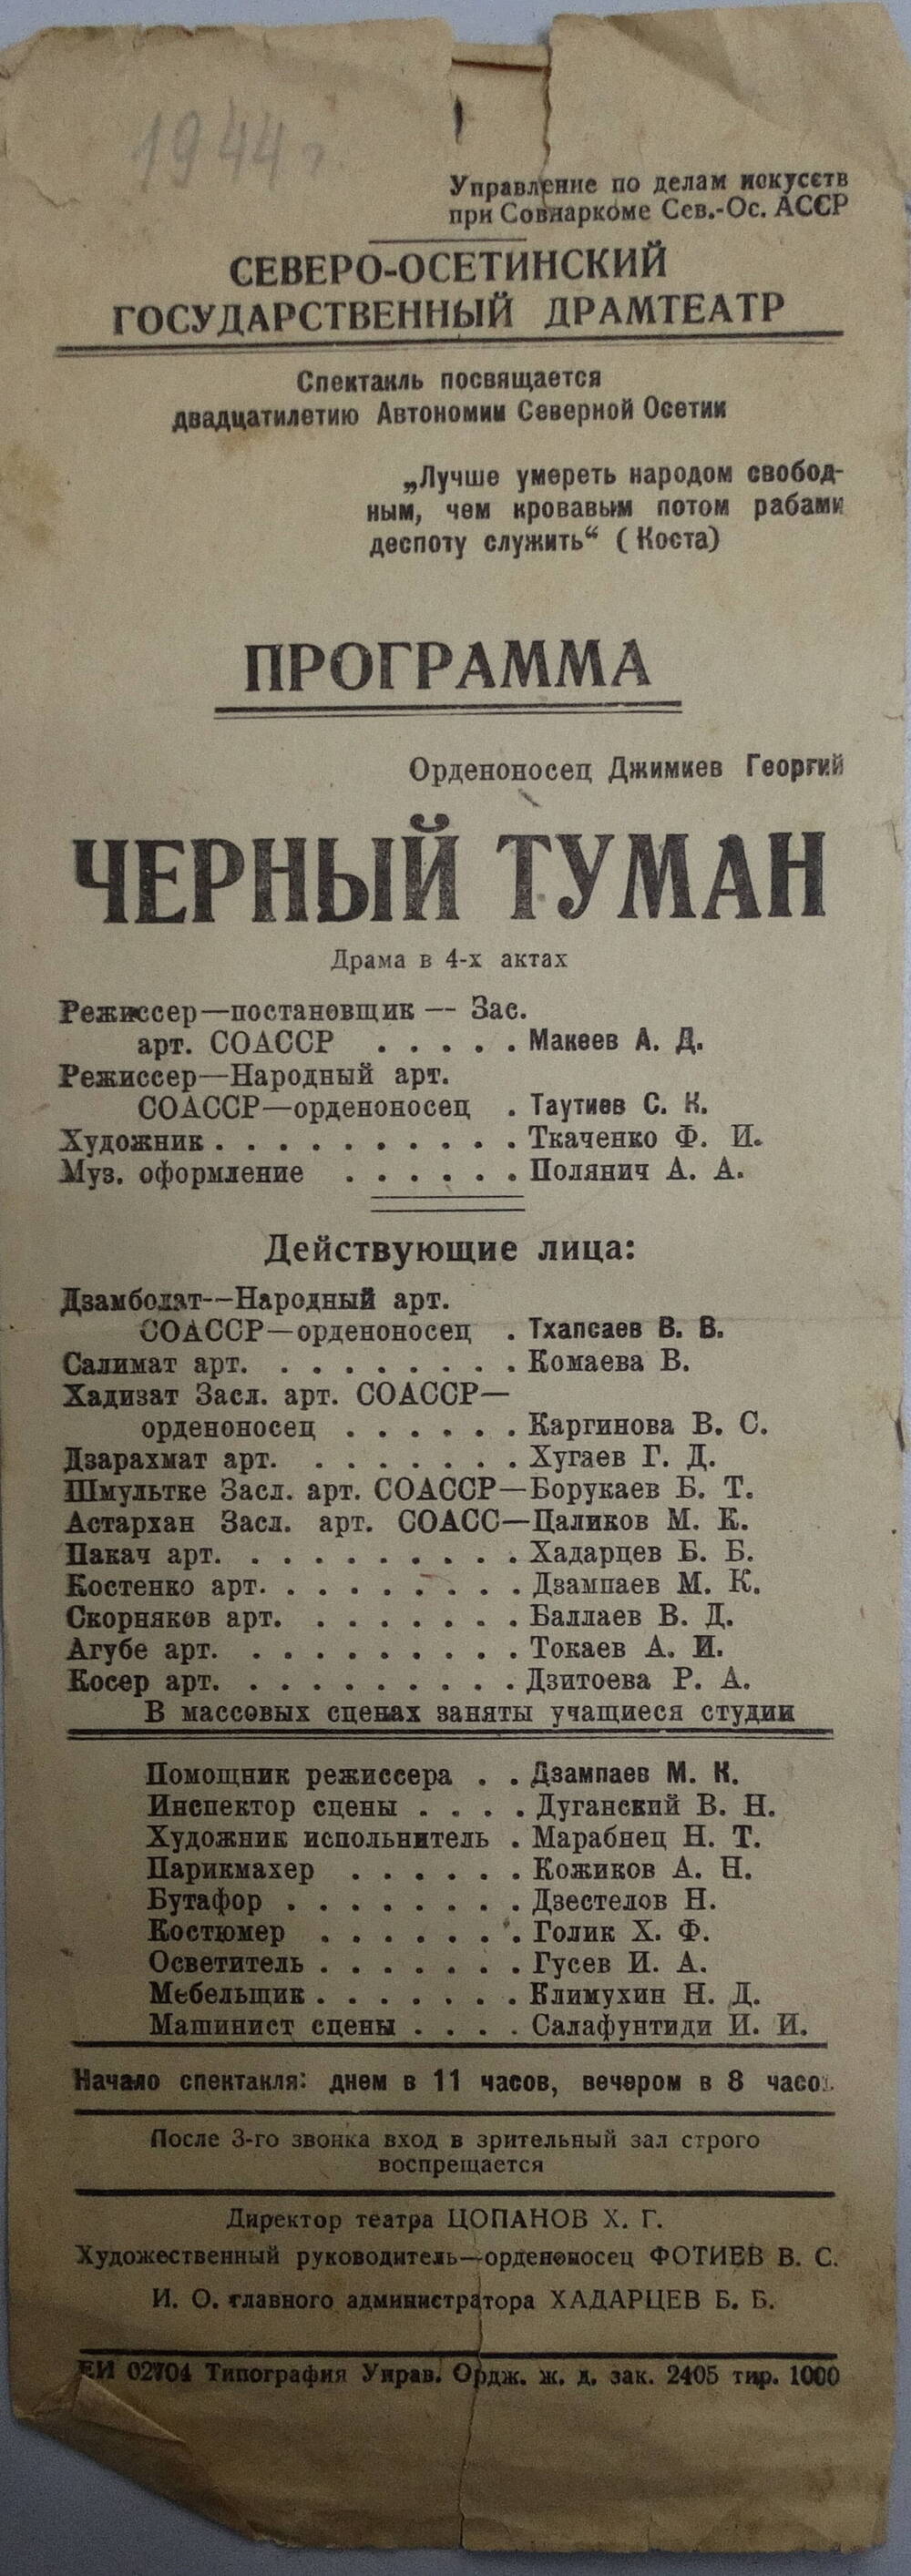 Программа Осетинского театра. Г.Джимиев Черный туман, реж. А.Макеев,1944 г.